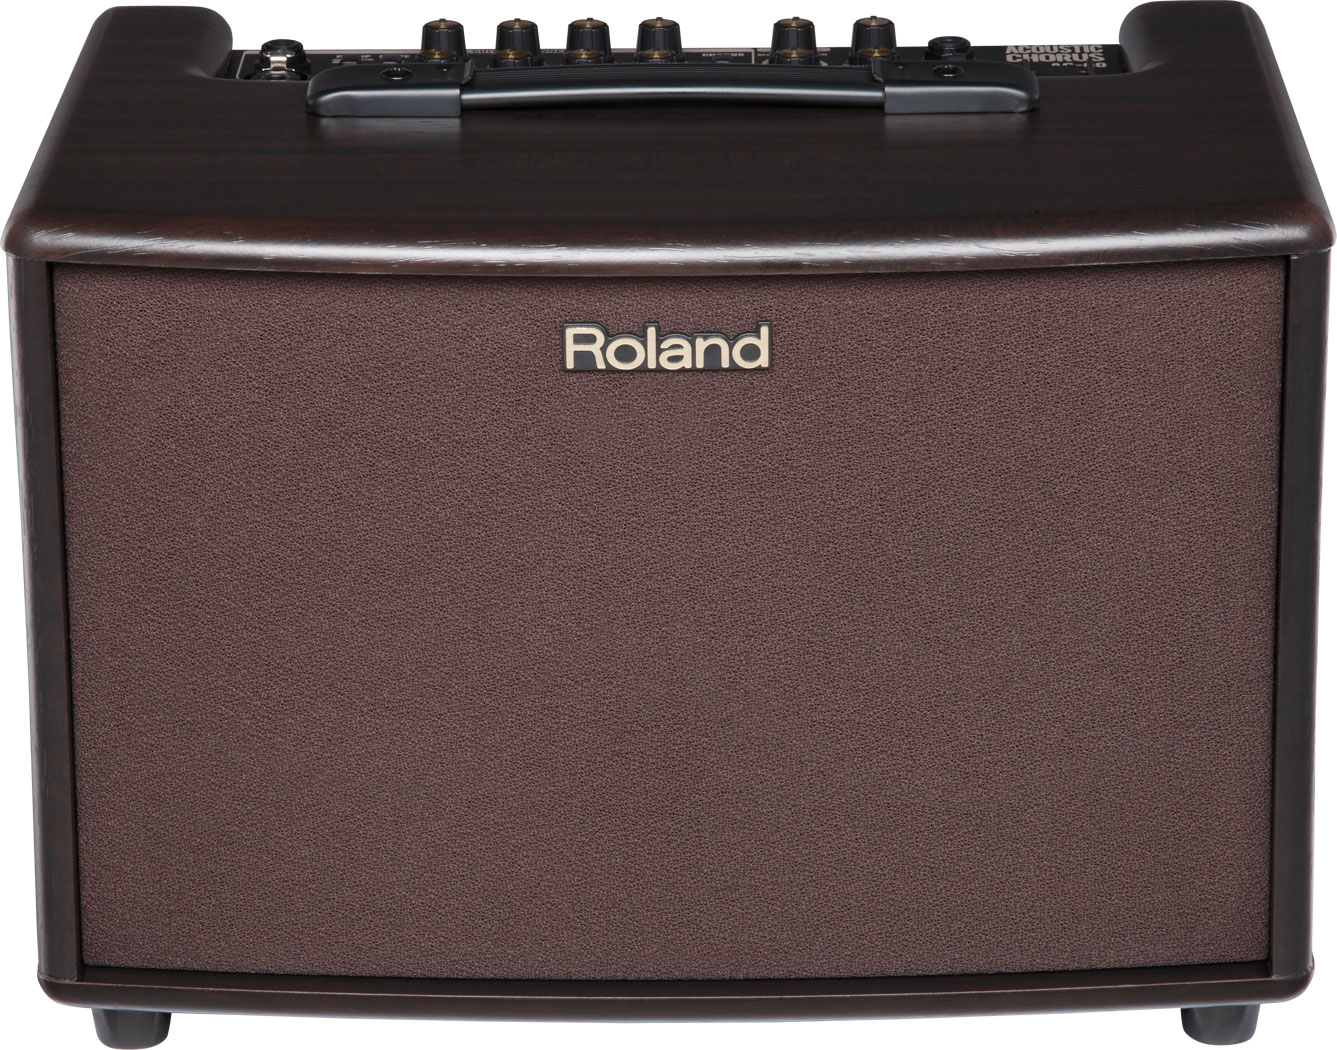 Roland AC60 アコースティックアンプ専用ケース付き